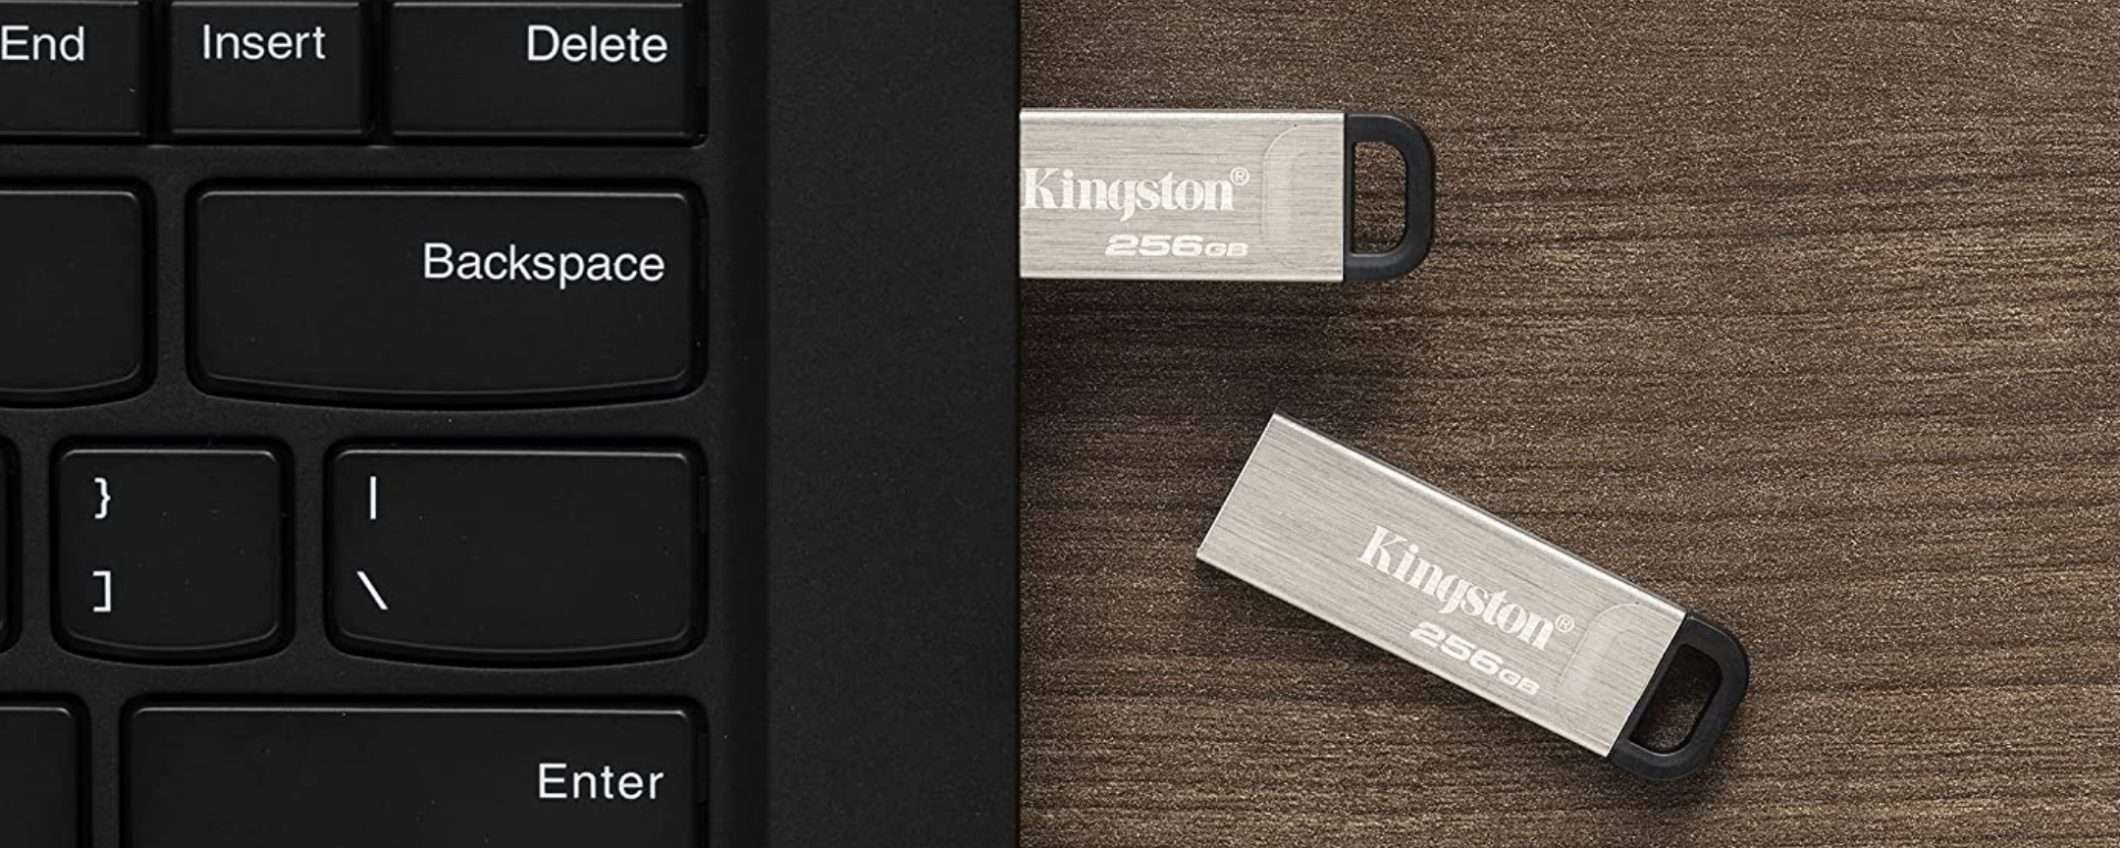 Kingston DataTraveler Kyson 256GB: 256GB a portata di tasca in offerta